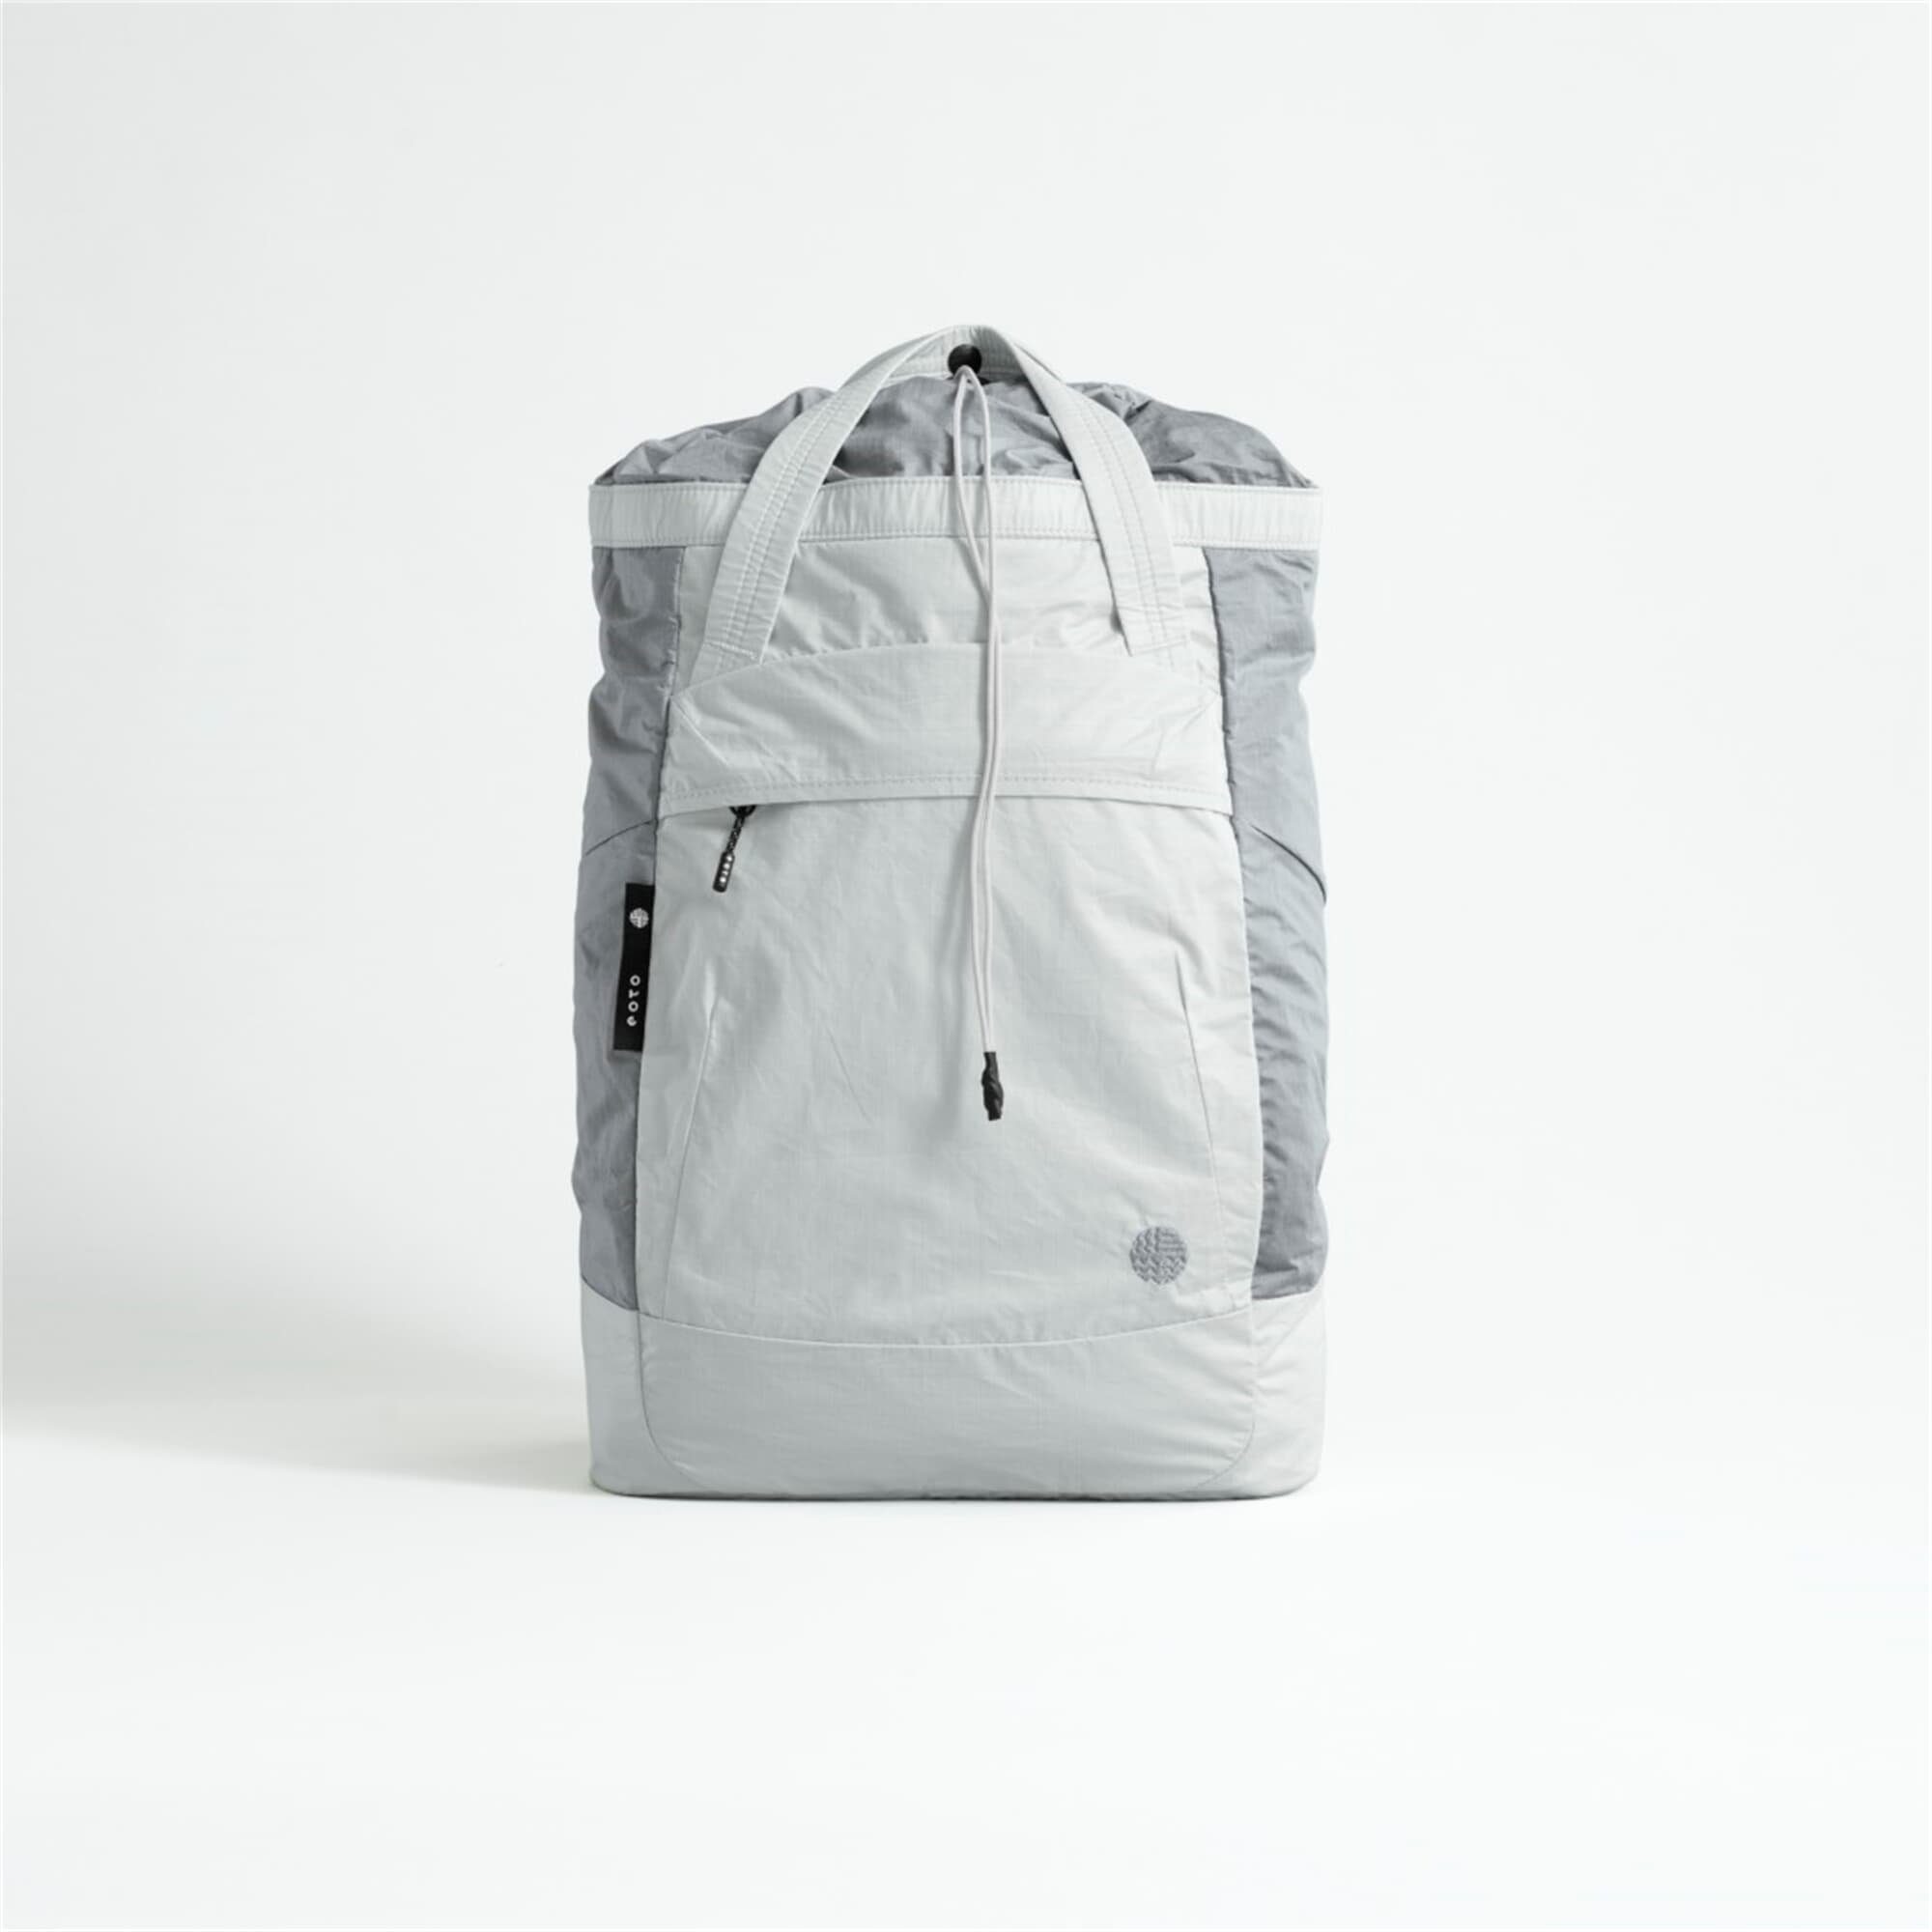 nachhaltig, eoto / Grau Rucksack L Daypack, MIST:IFY 24 Weiß AIR